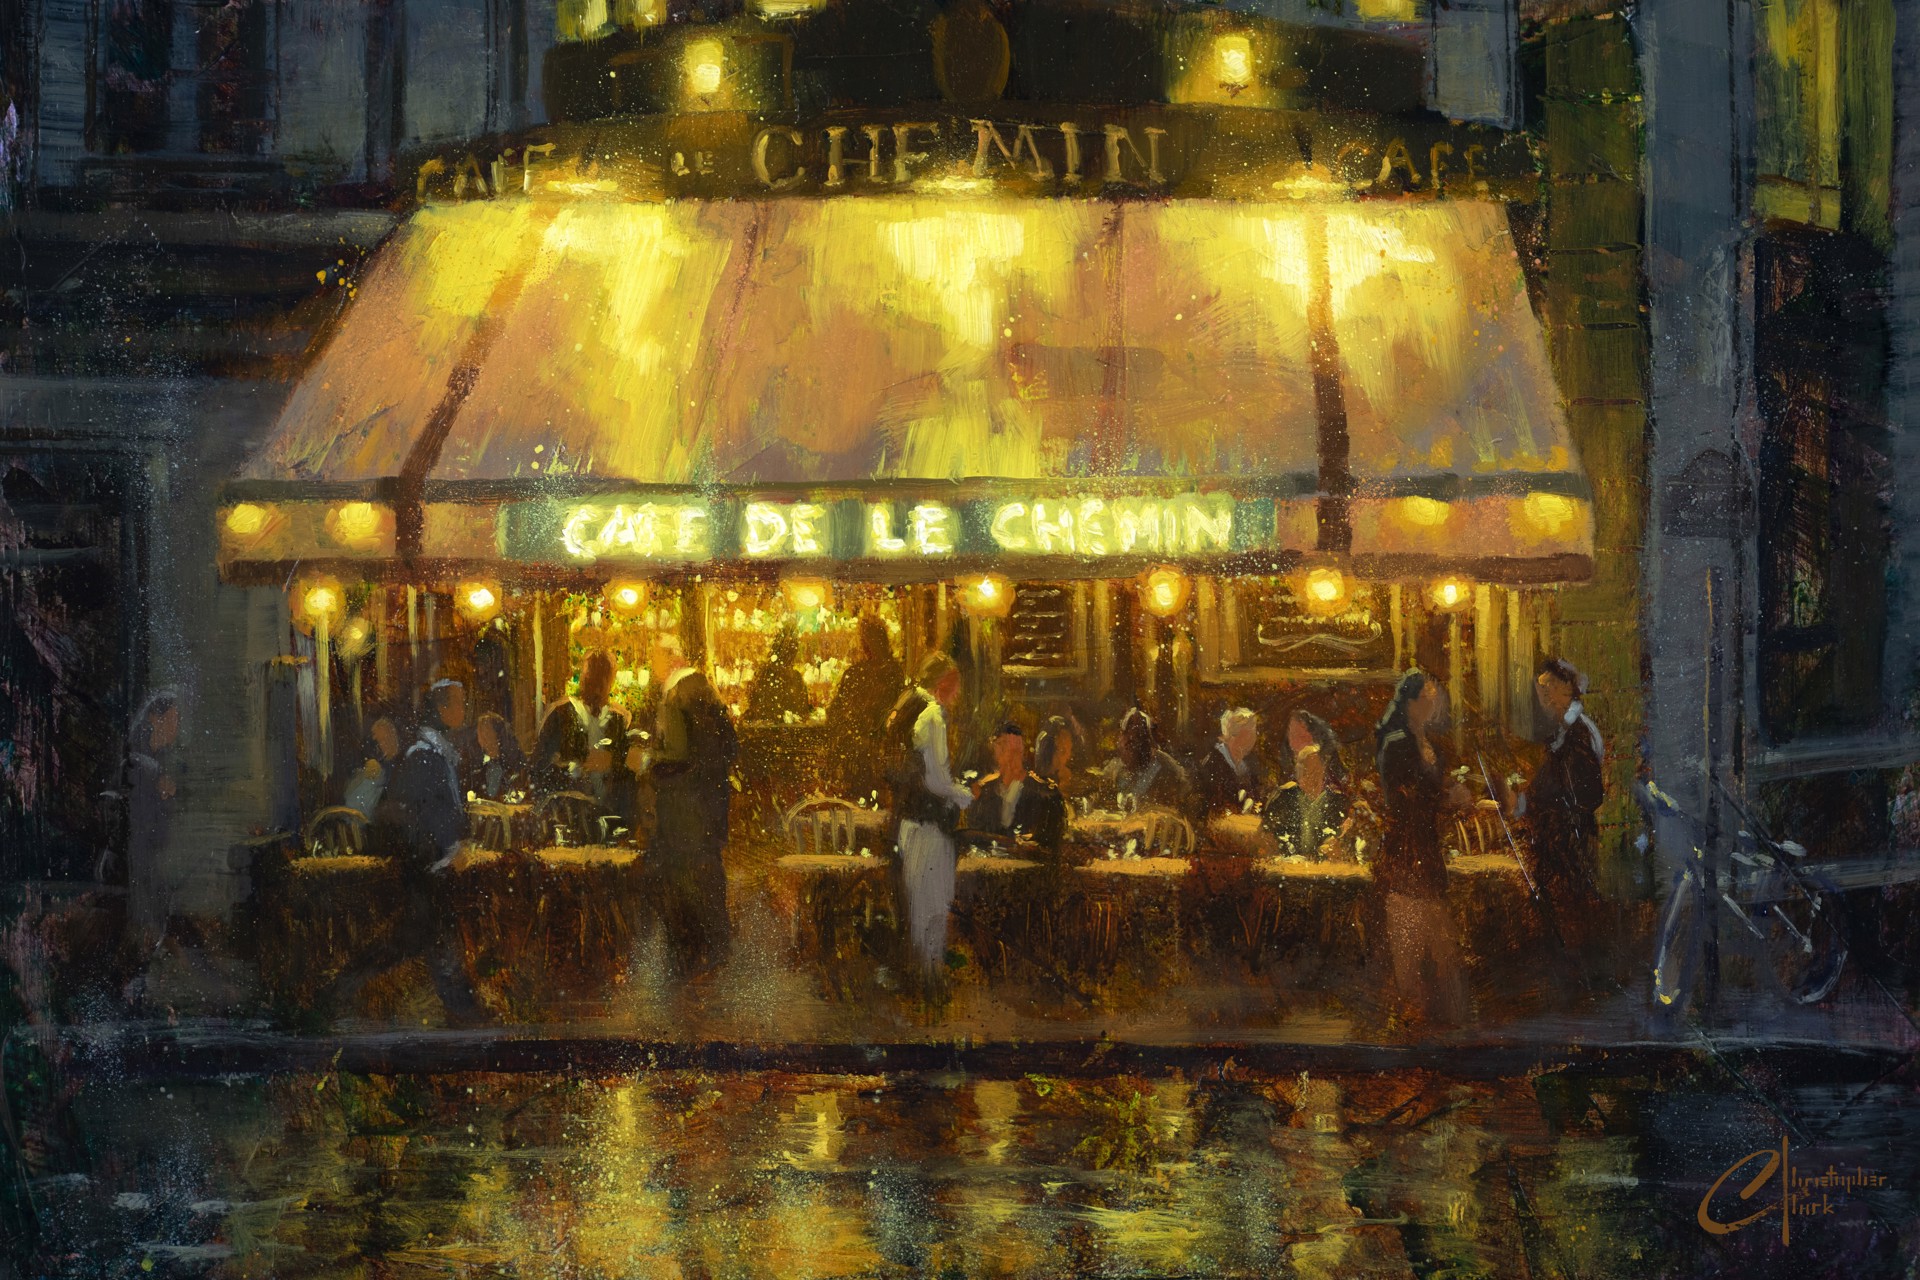 Paris, Cafe de le Chemin by Christopher Clark